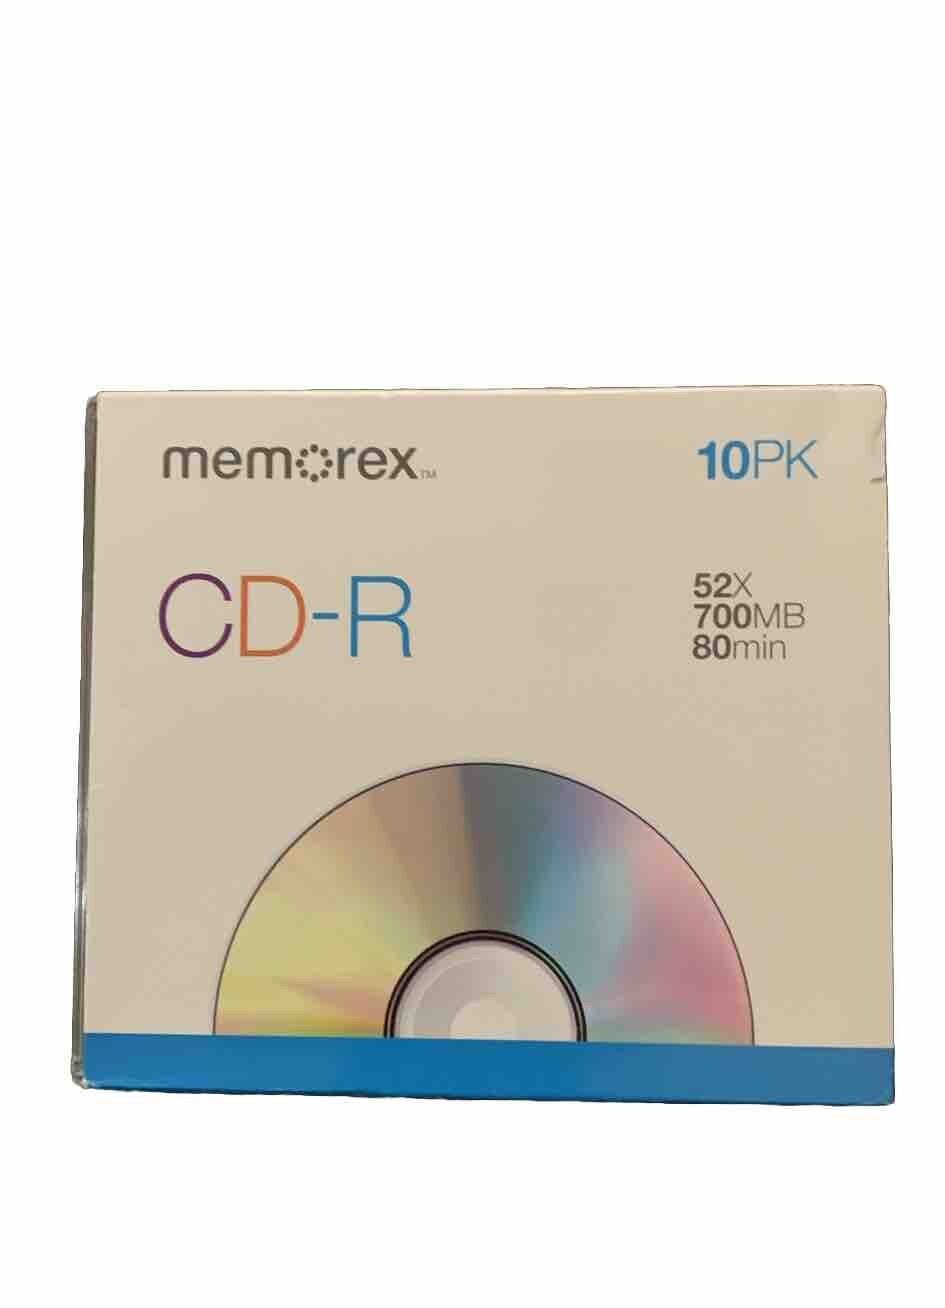 Memorex CD-R 52X 700mb 80 Min. 10 Pack Slim Jewel Case. New Open Box.